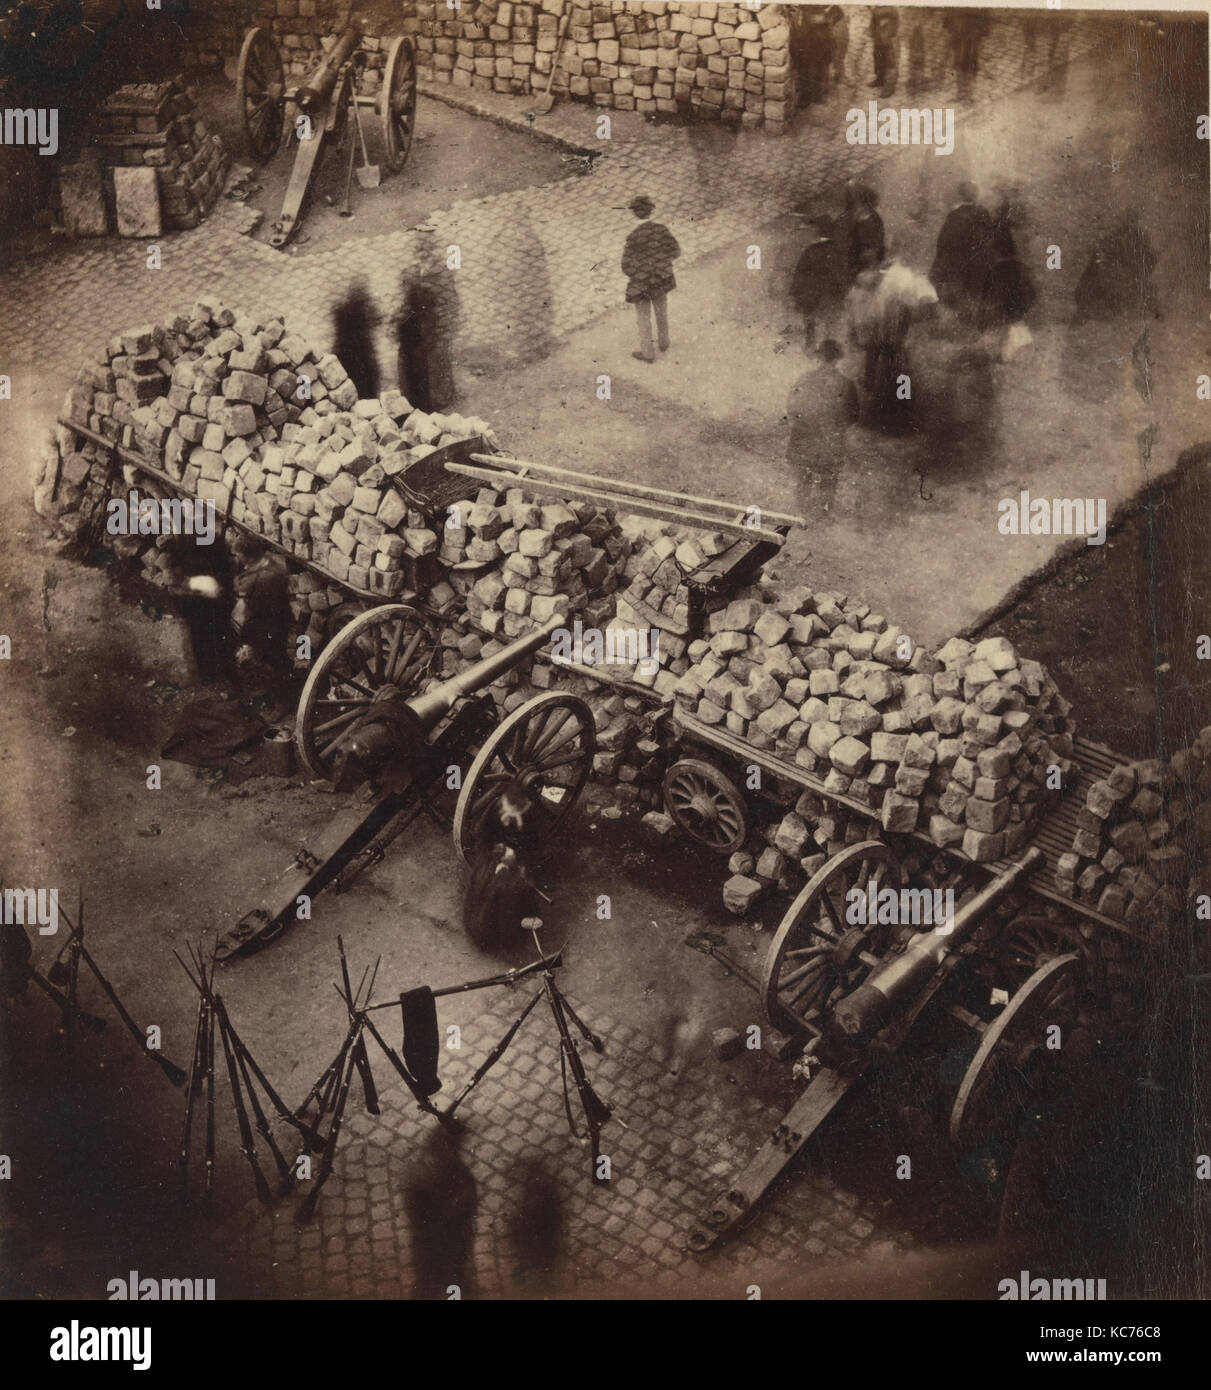 Des barricades de la Commune, avril 71. Coin de la place Hôtel de Ville et de la rue de Rivoli, Pierre-Ambrose Richebourg, 1871 Banque D'Images